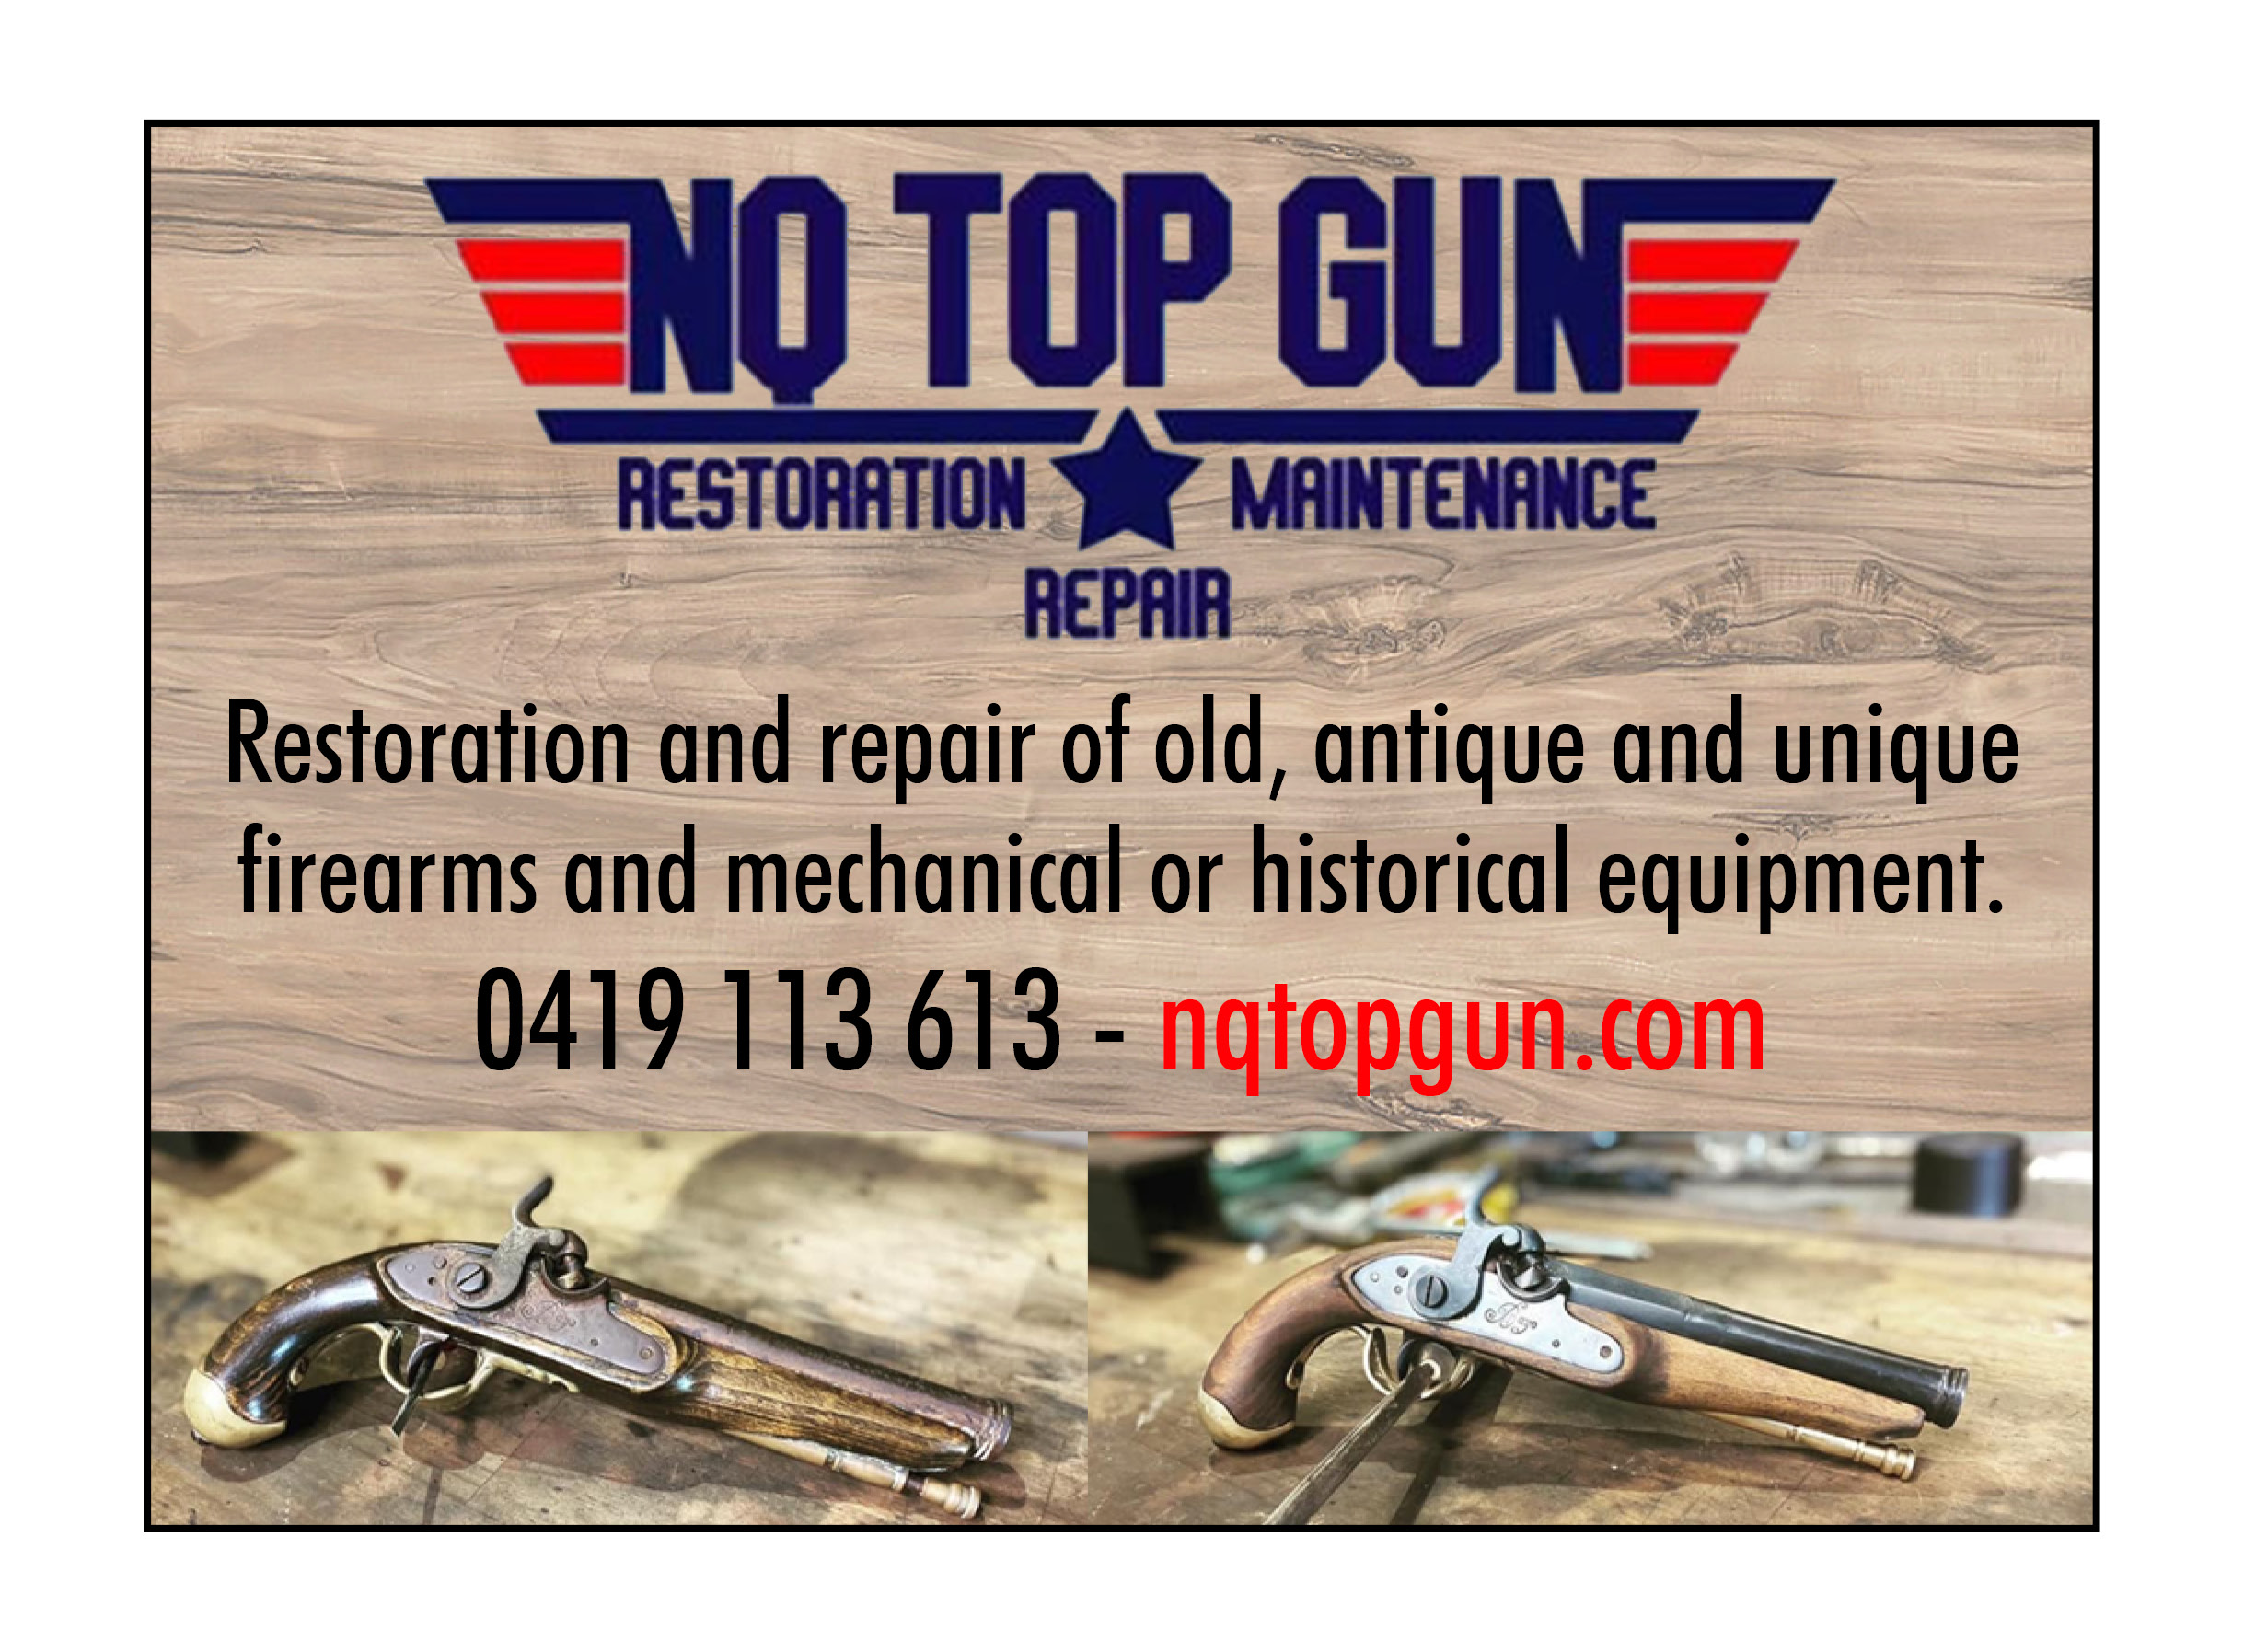 NQ Top Gun - Australian Business Directory